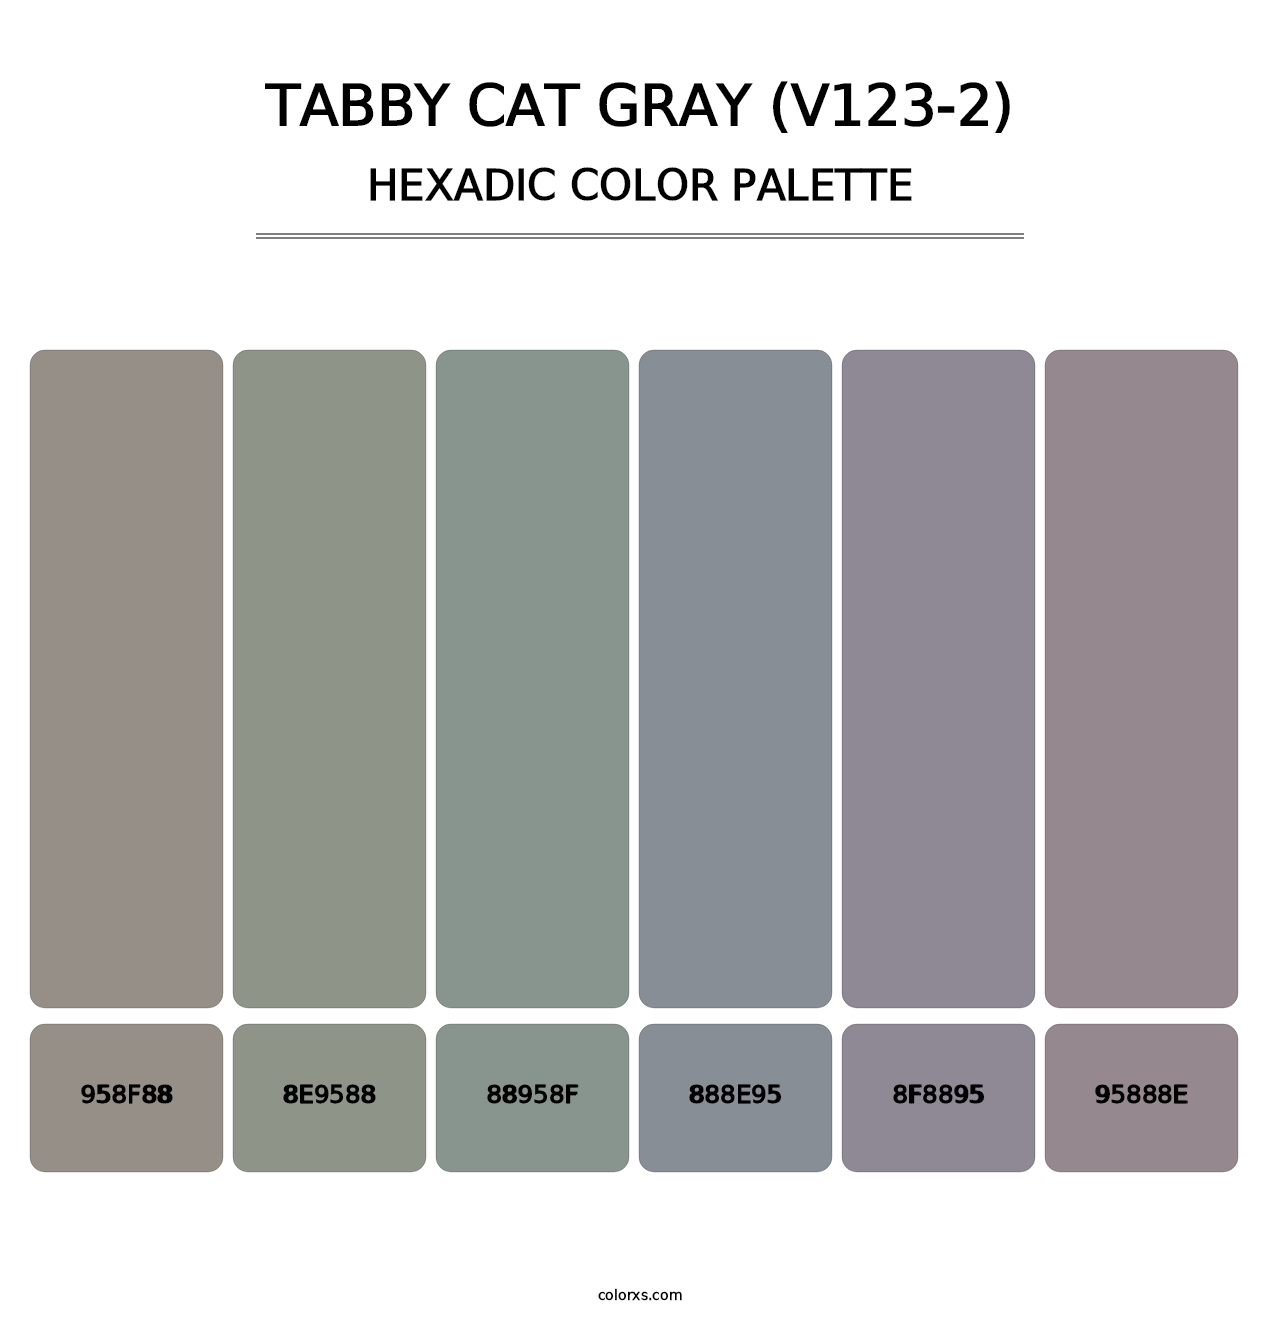 Tabby Cat Gray (V123-2) - Hexadic Color Palette